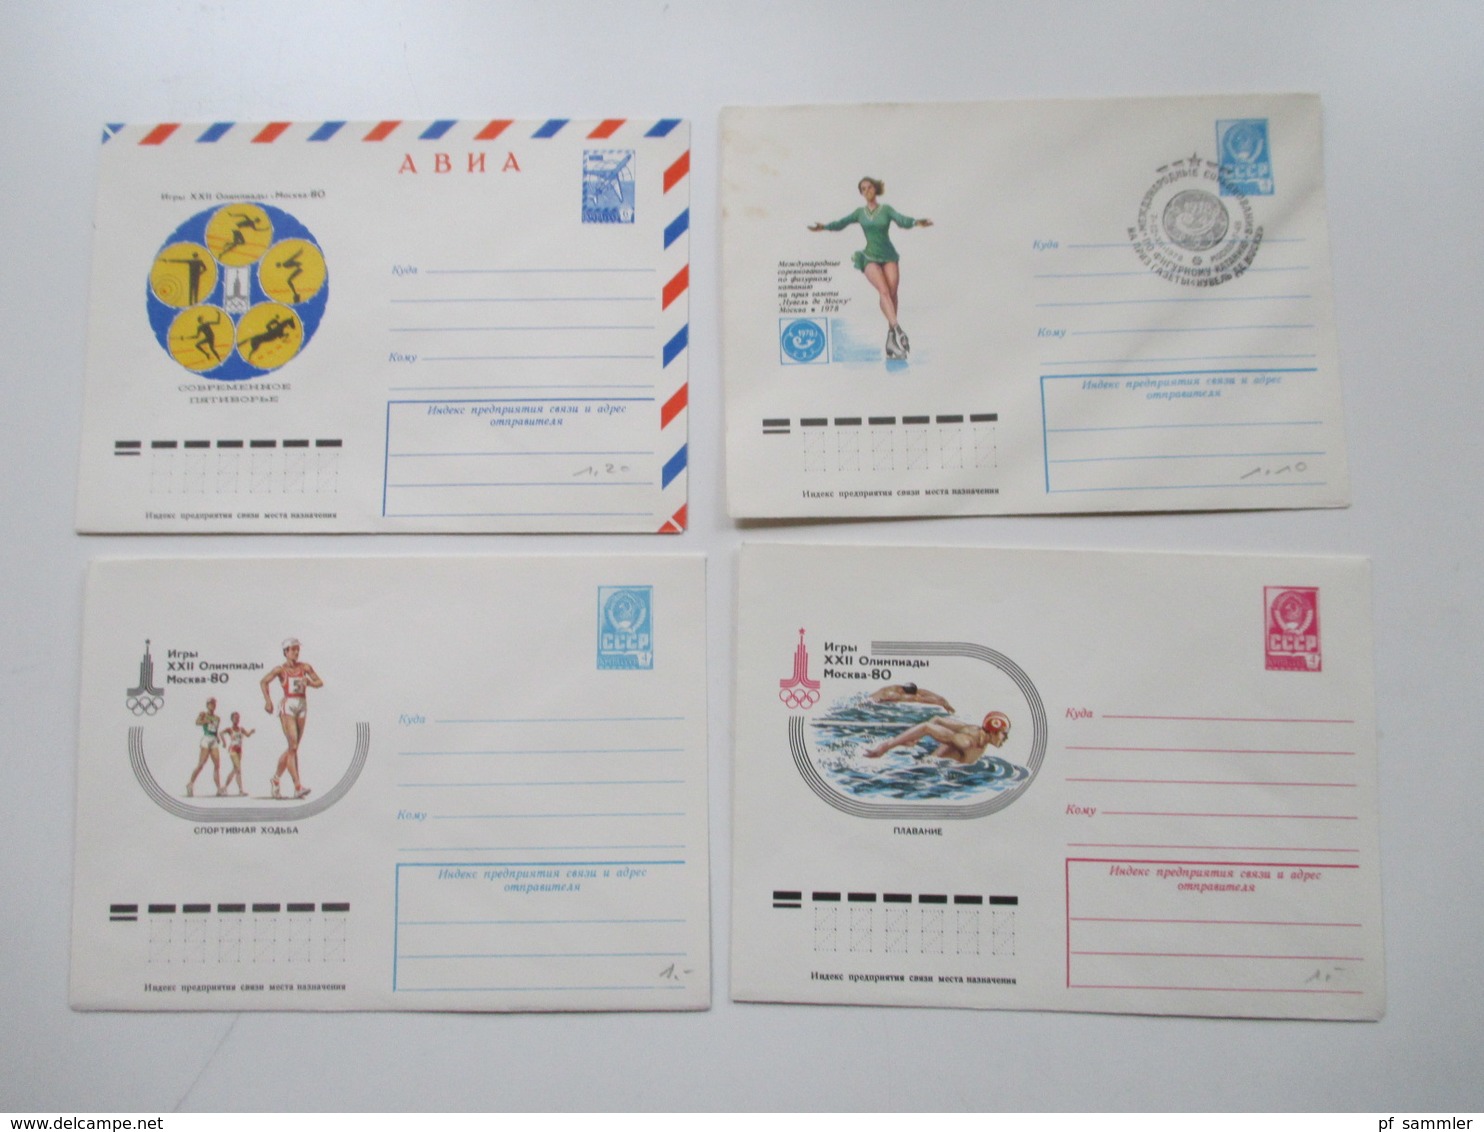 Russland / UDSSR Posten GA Karten / Umschläge ca. 1970er Jahre  - 2001 insgesamt 240 Stück ungebraucht / SST Lagerposten